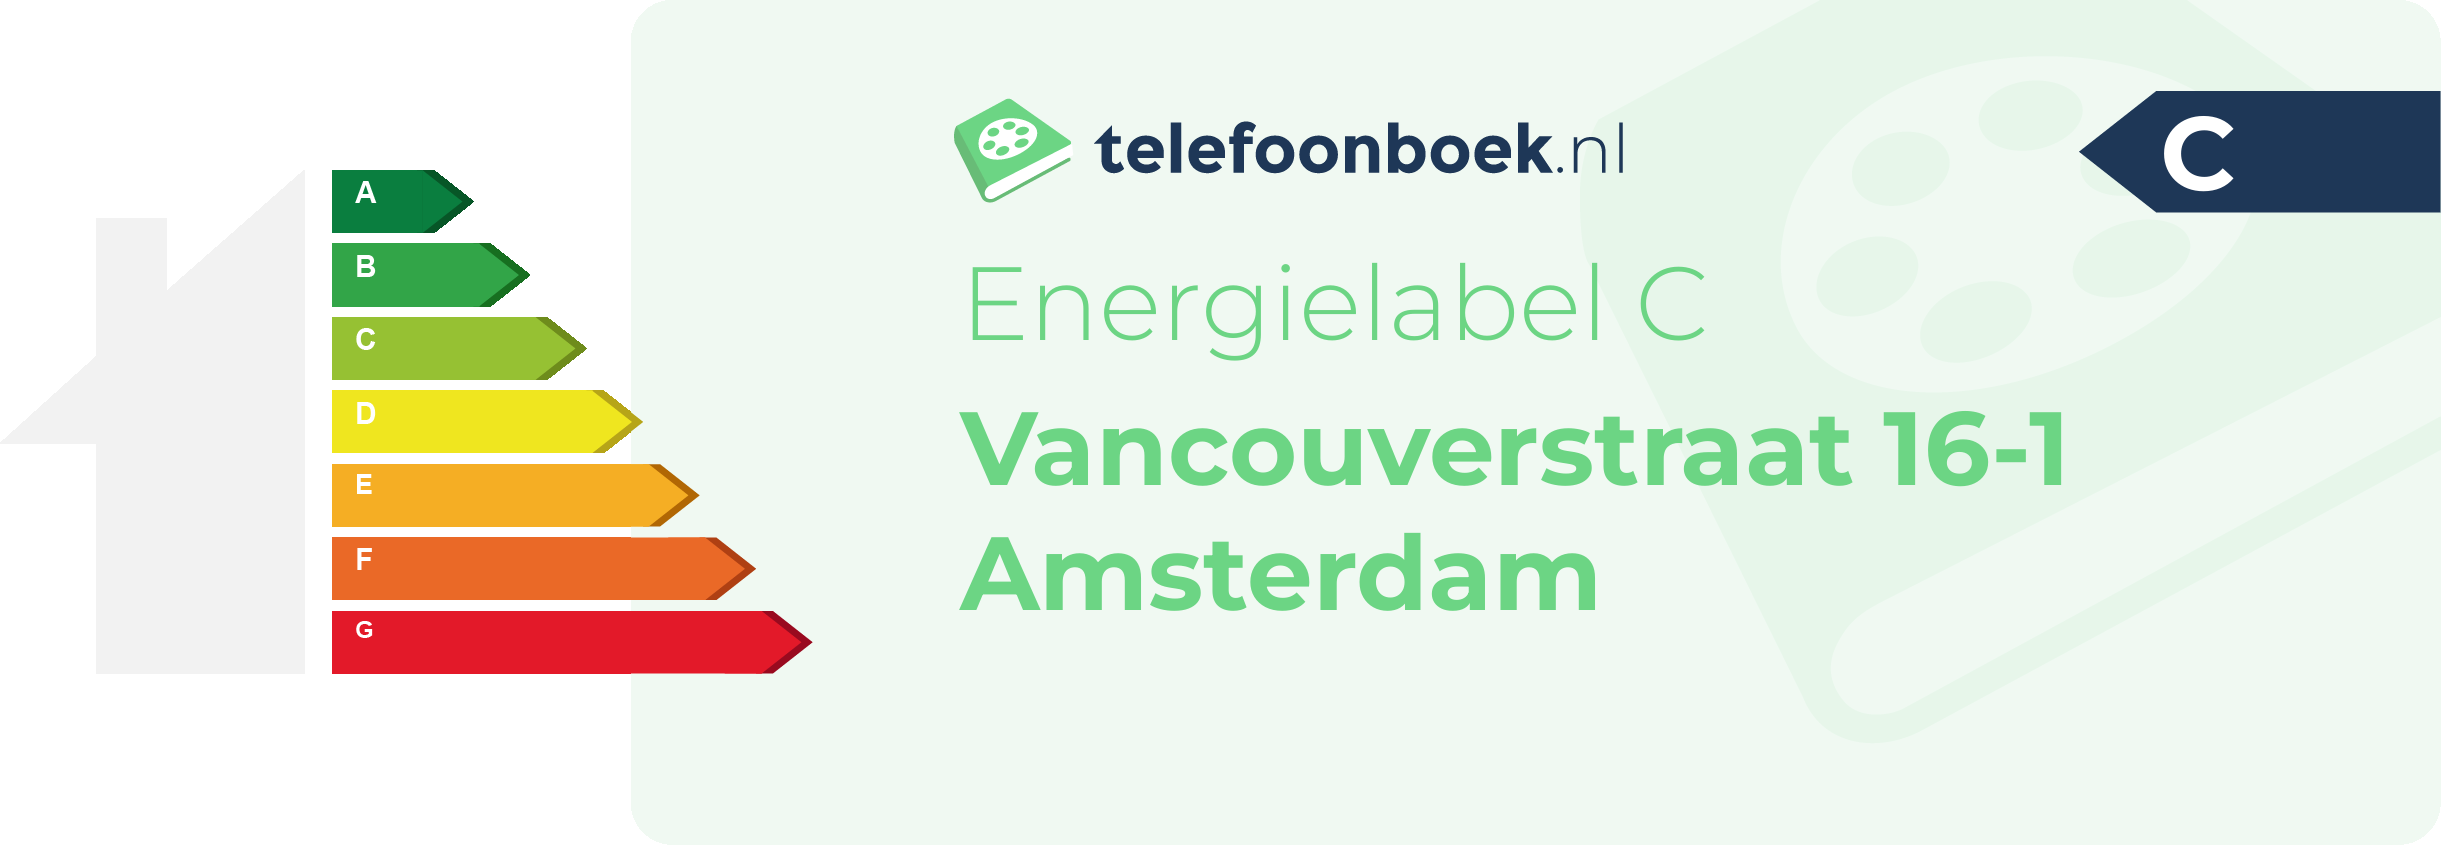 Energielabel Vancouverstraat 16-1 Amsterdam